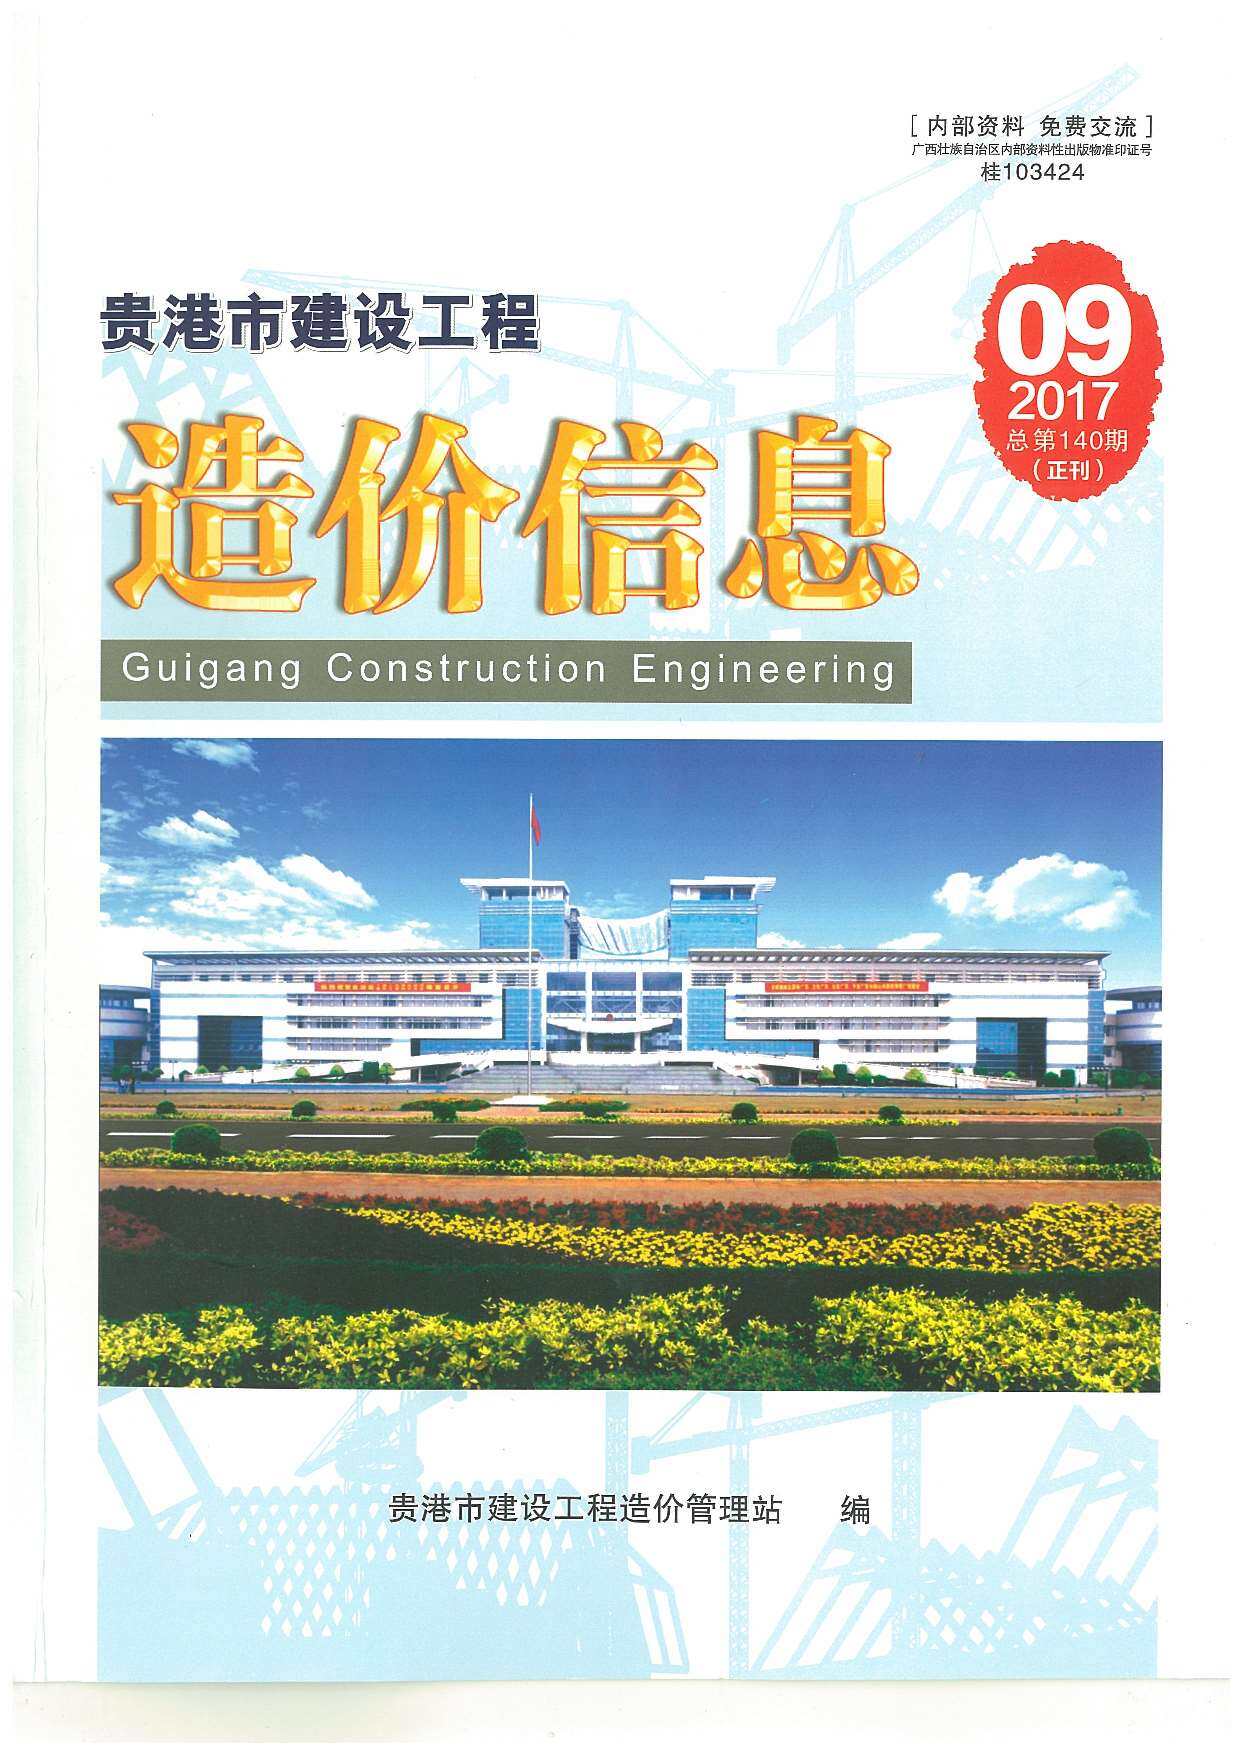 贵港市2017年9月工程造价信息期刊